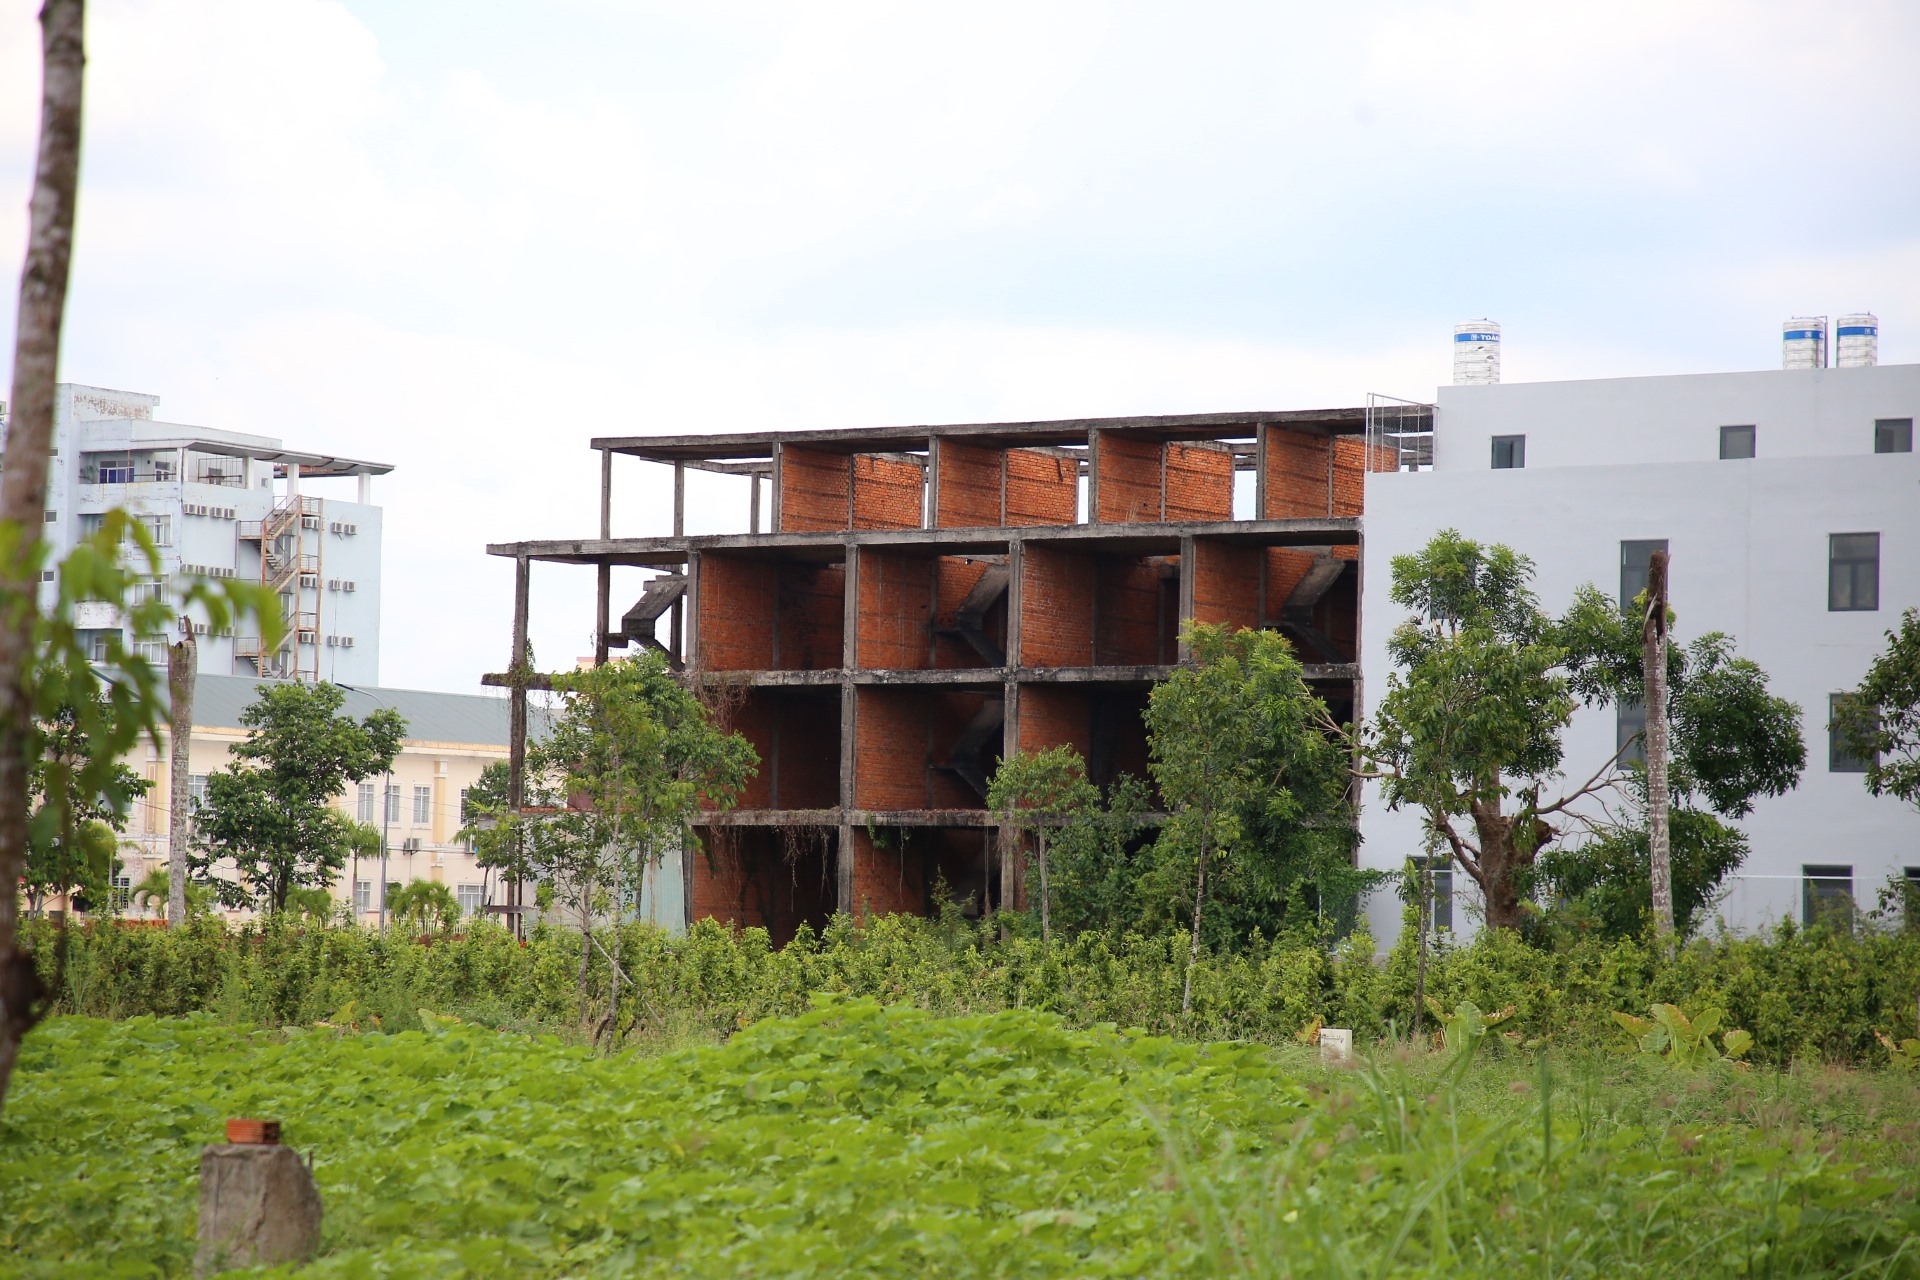 Khu đô thị Nam Cần Thơ với hơn 10 dự án xây dựng dân cư, 4 dự án khu tái định cư trên diện tích hơn 470 ha.